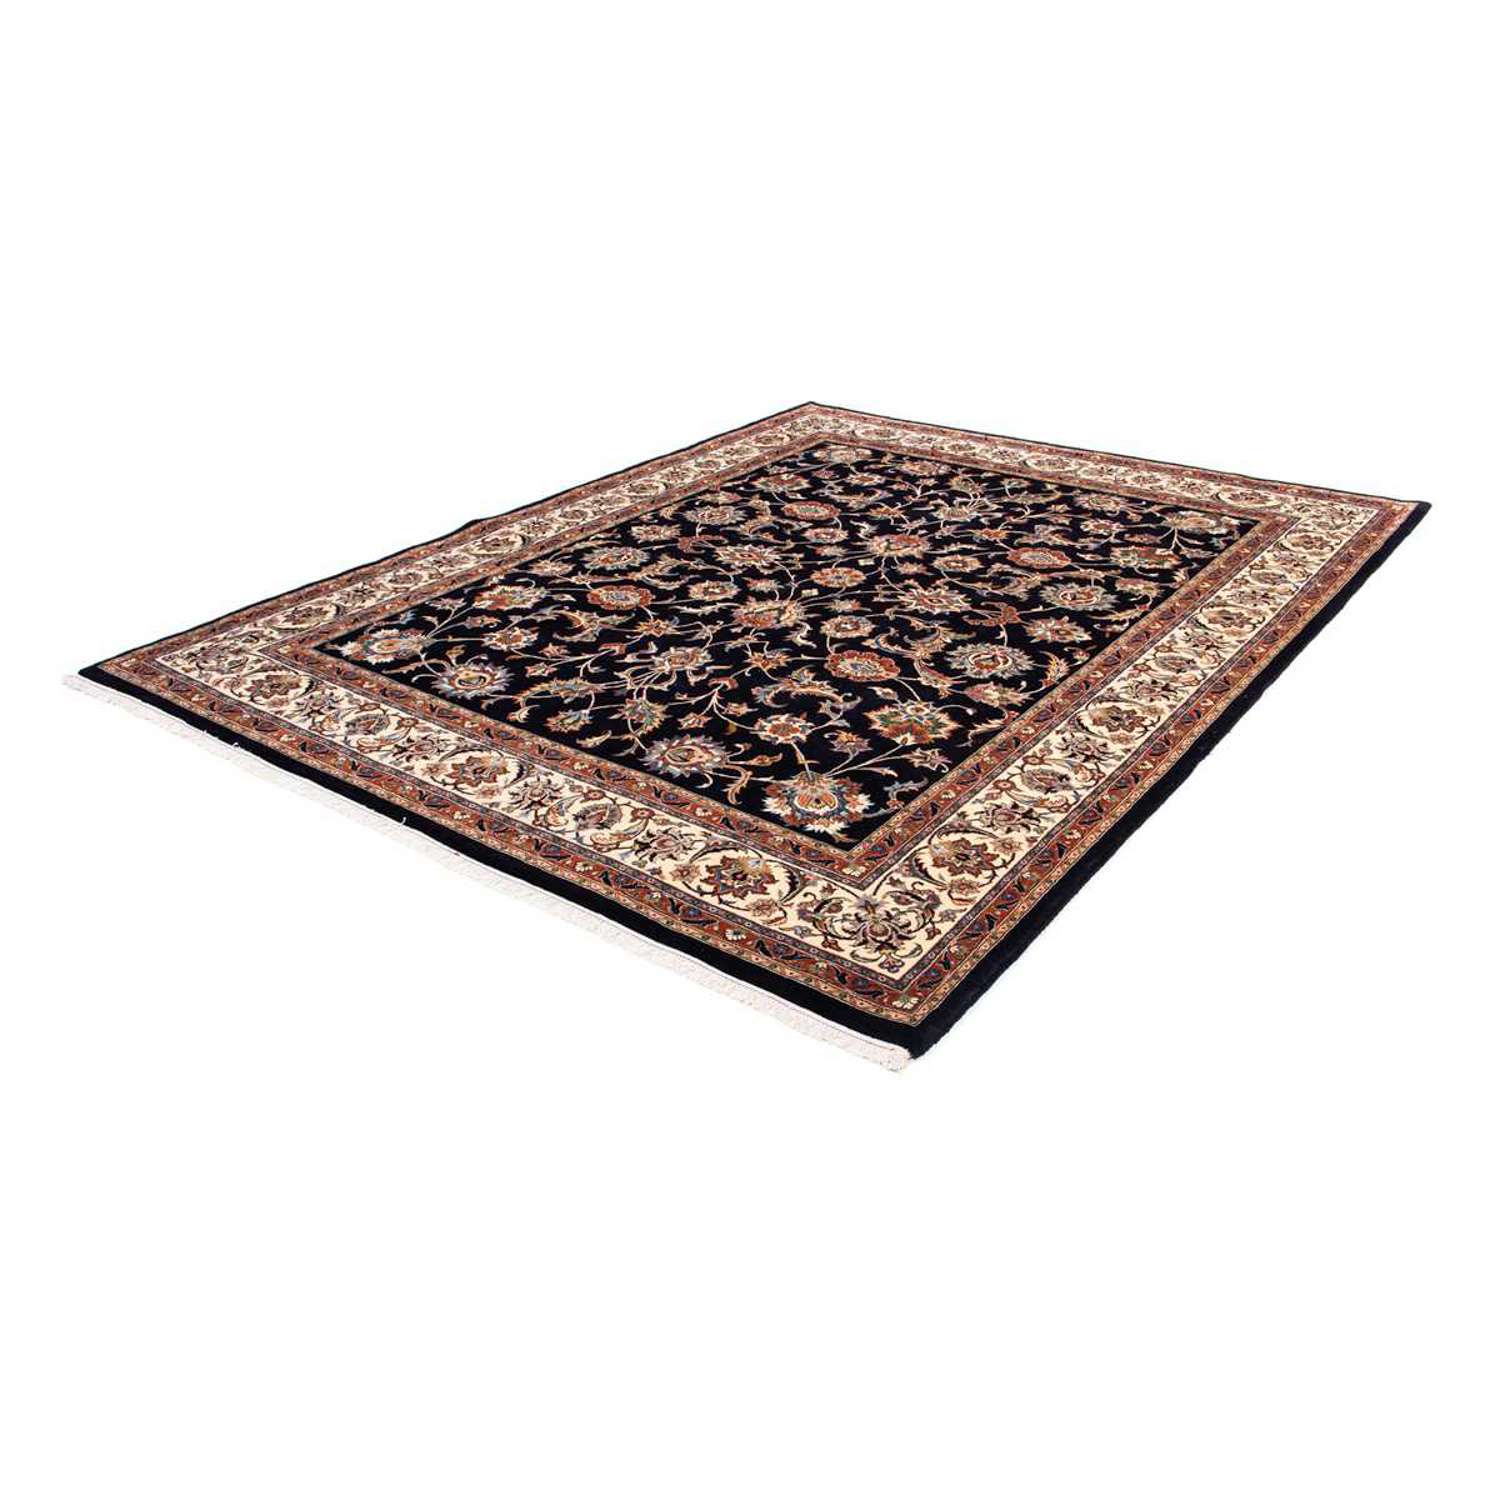 Perzisch tapijt - Klassiek - 282 x 218 cm - donkerblauw